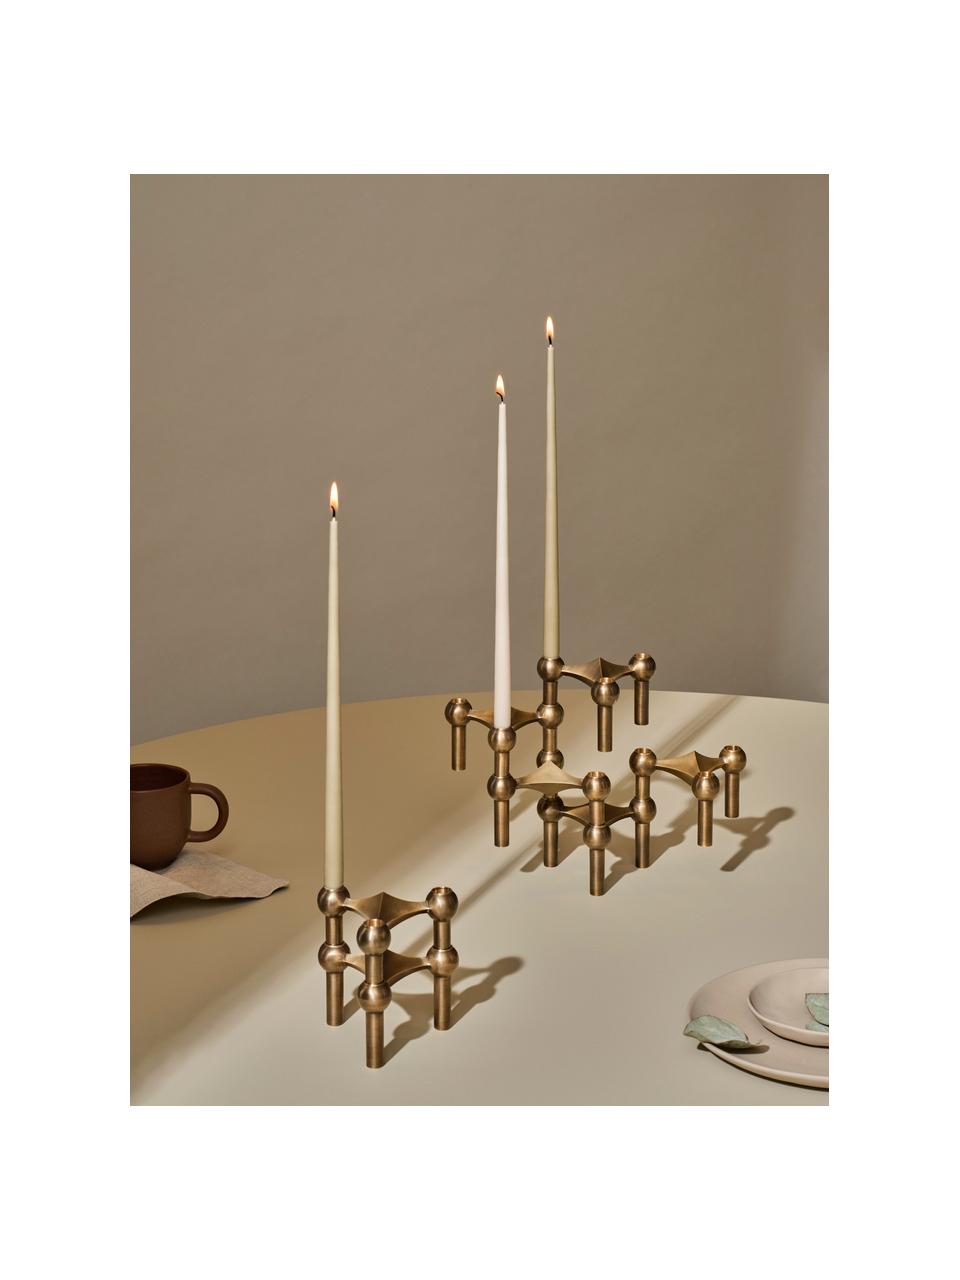 Tenké stolní svíčky Stoff Nagel, 6 ks, Parafínový vosk, Greige, V 29 cm